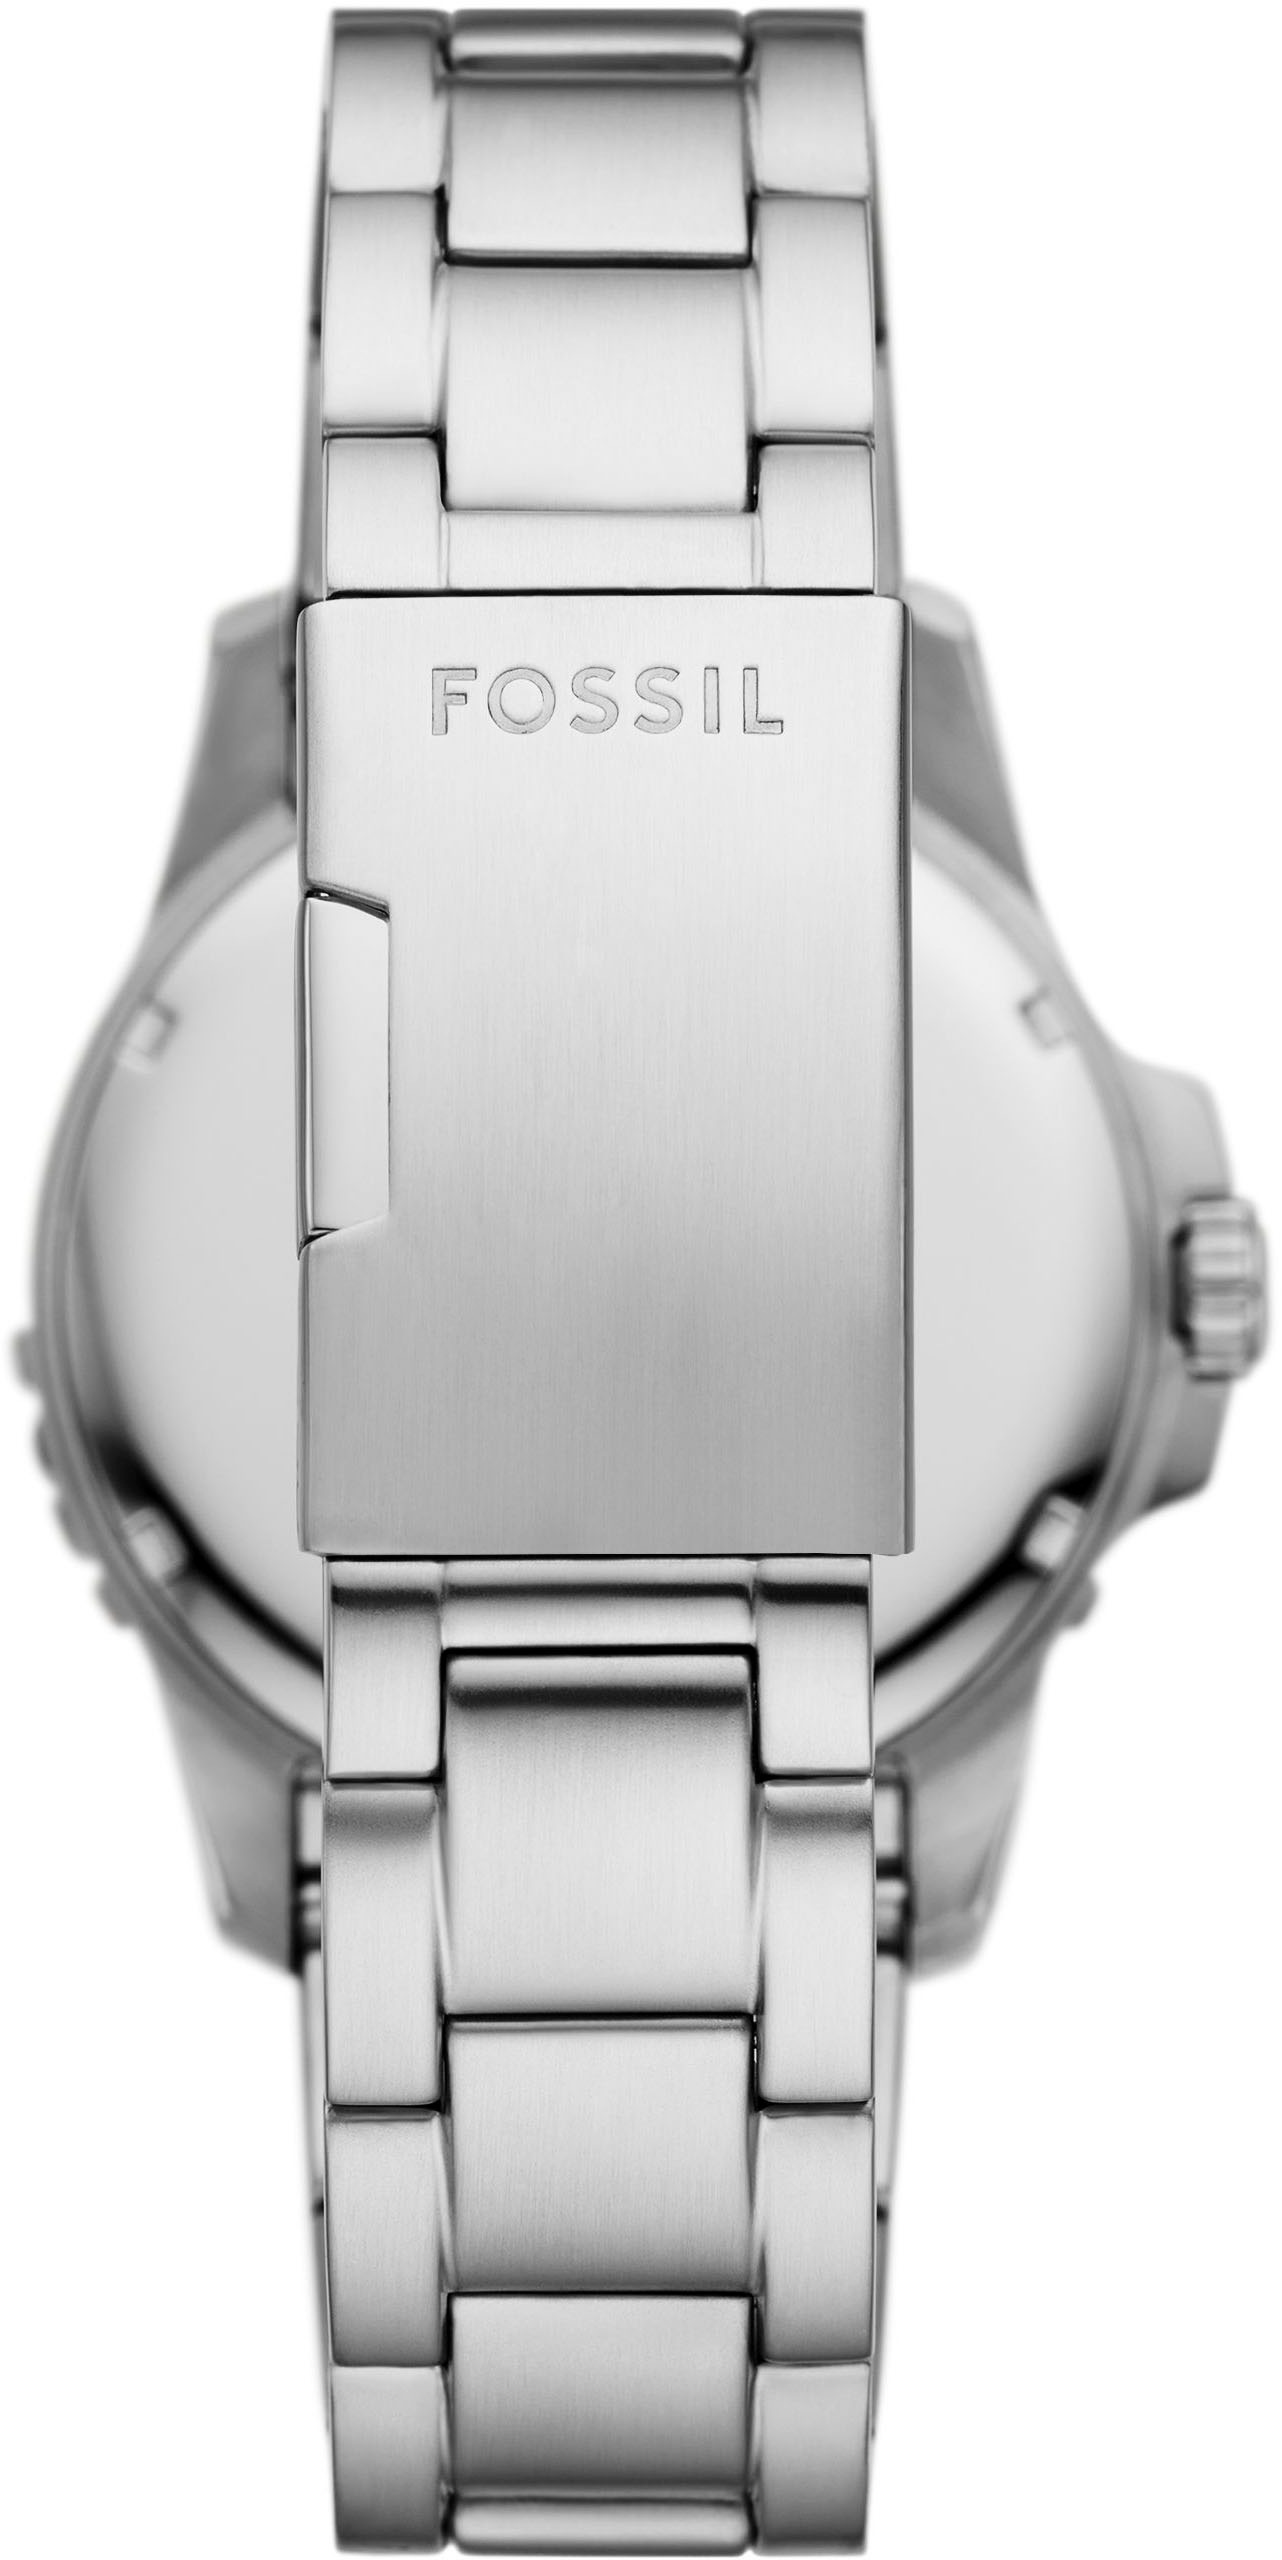 Fossil Quarzuhr »FOSSIL BLUE DIVE«, Armbanduhr, Herrenuhr, Datum, analog